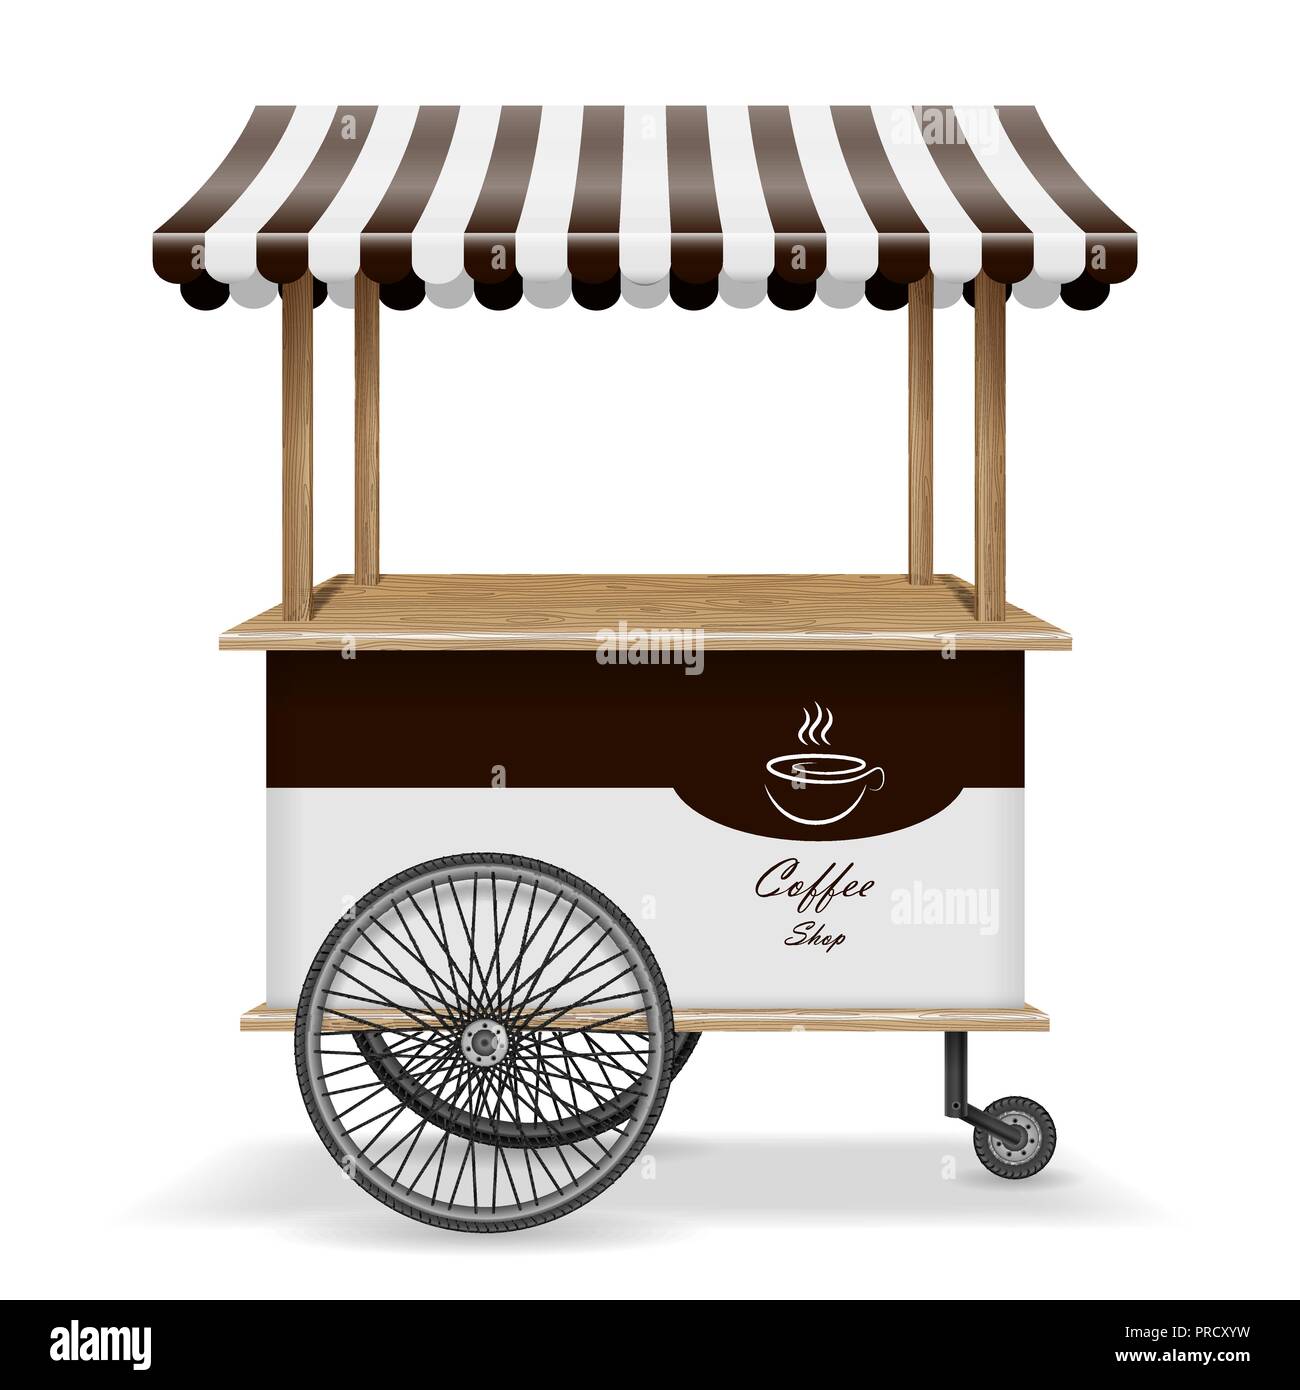 Realistico il cibo di strada carrello con ruote. Mobile del mercato del caffè modello di stallo. Caffè caldo store kiosk mockup isolato. Illustrazione Vettoriale Illustrazione Vettoriale